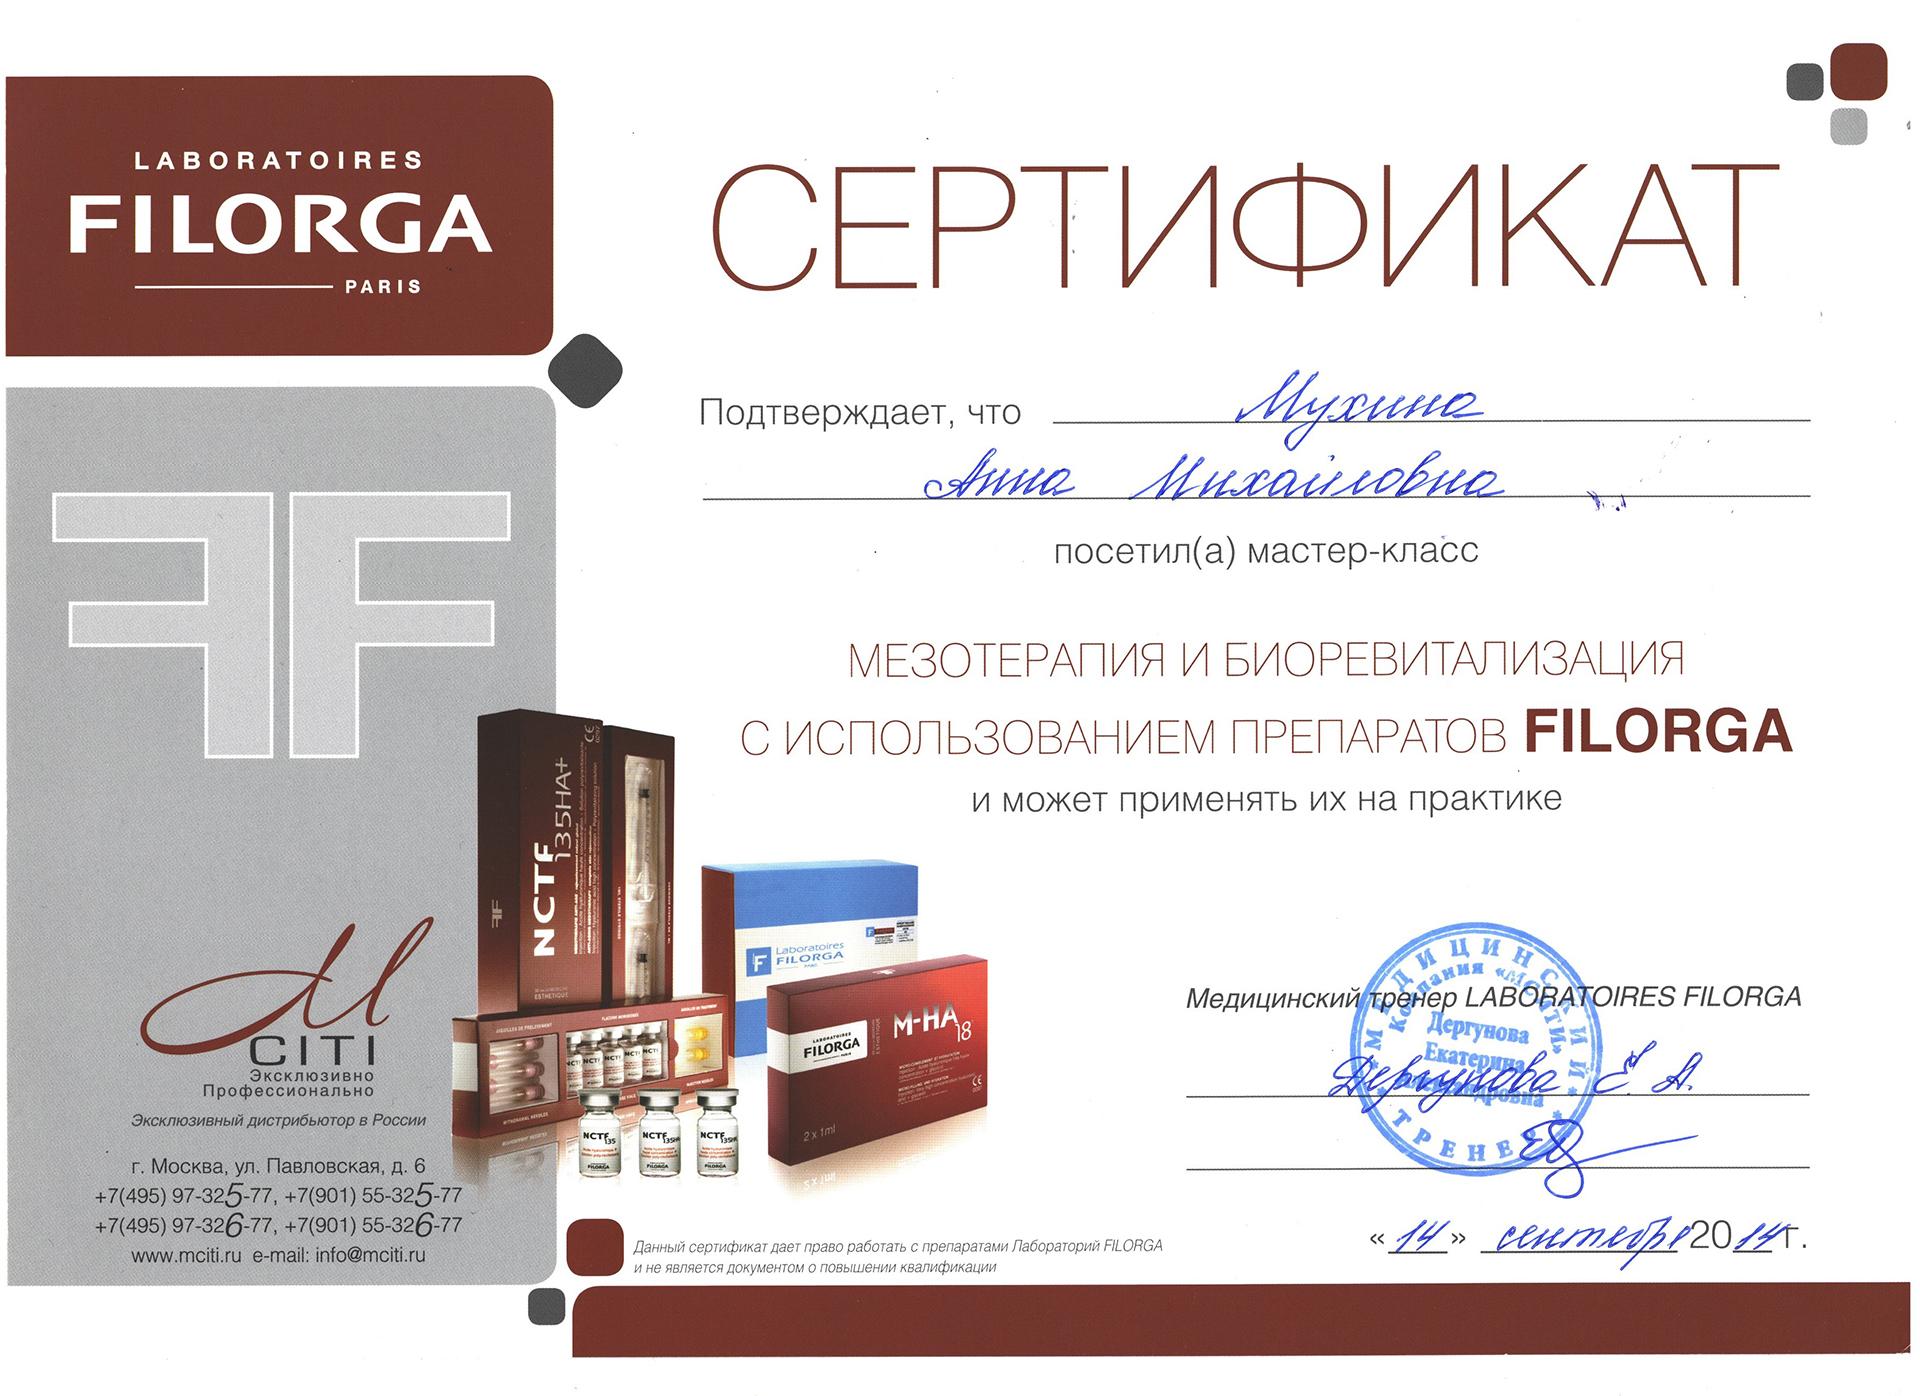 Сертификат — Применение препаратов Filorga. Мухина Анна Михайловна